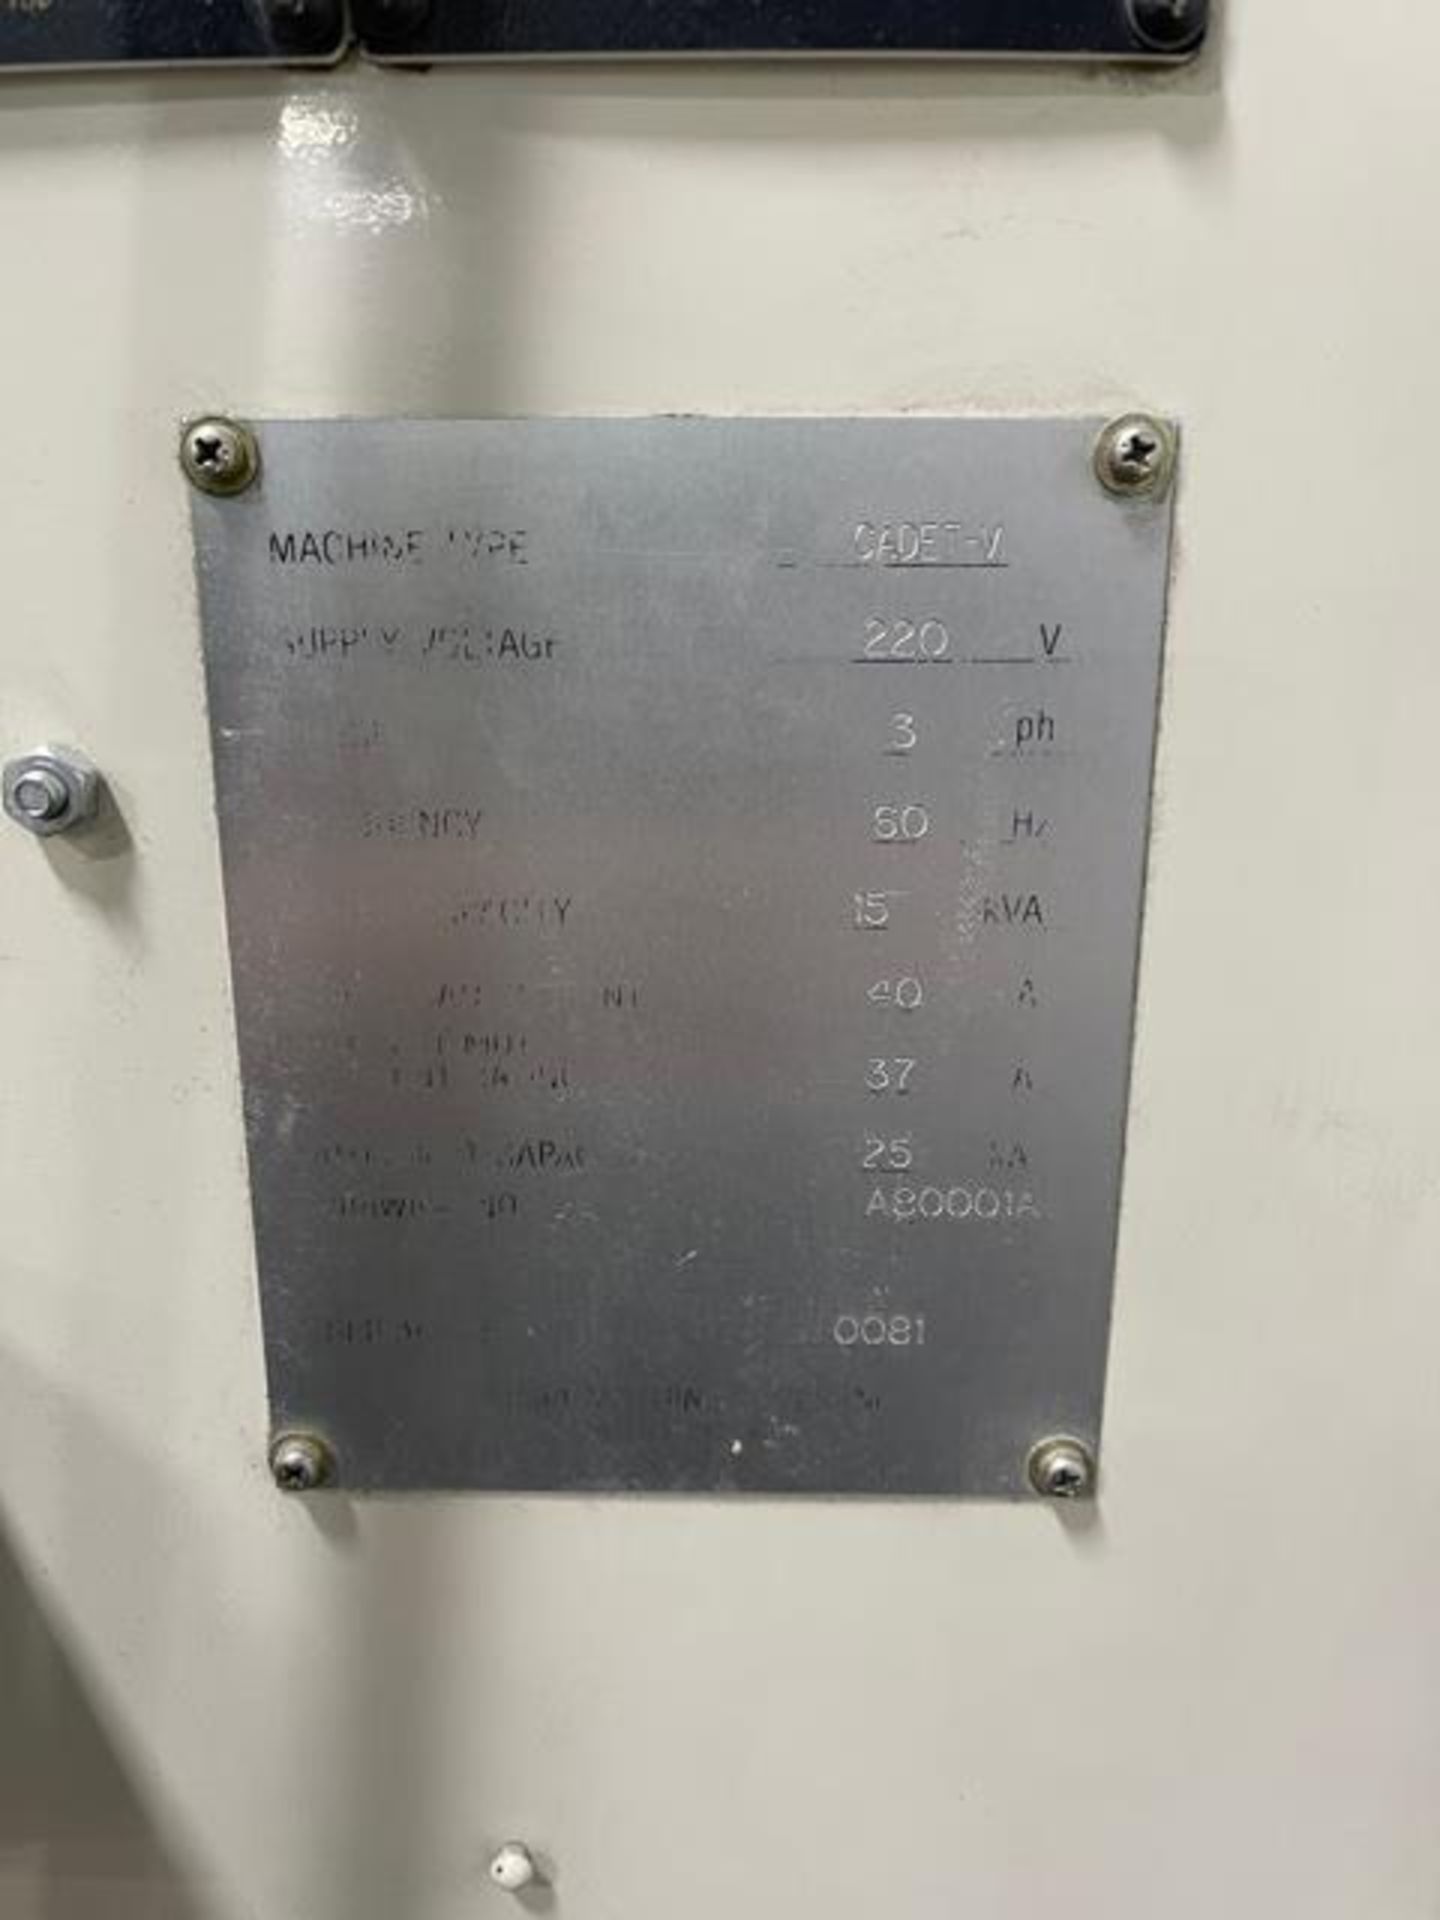 Okuma Cadet Mate 4020 CNC Vertical Machining Center s/m 0081 w/ Okuma OSP5020M Controls, SOLD AS IS - Image 4 of 5